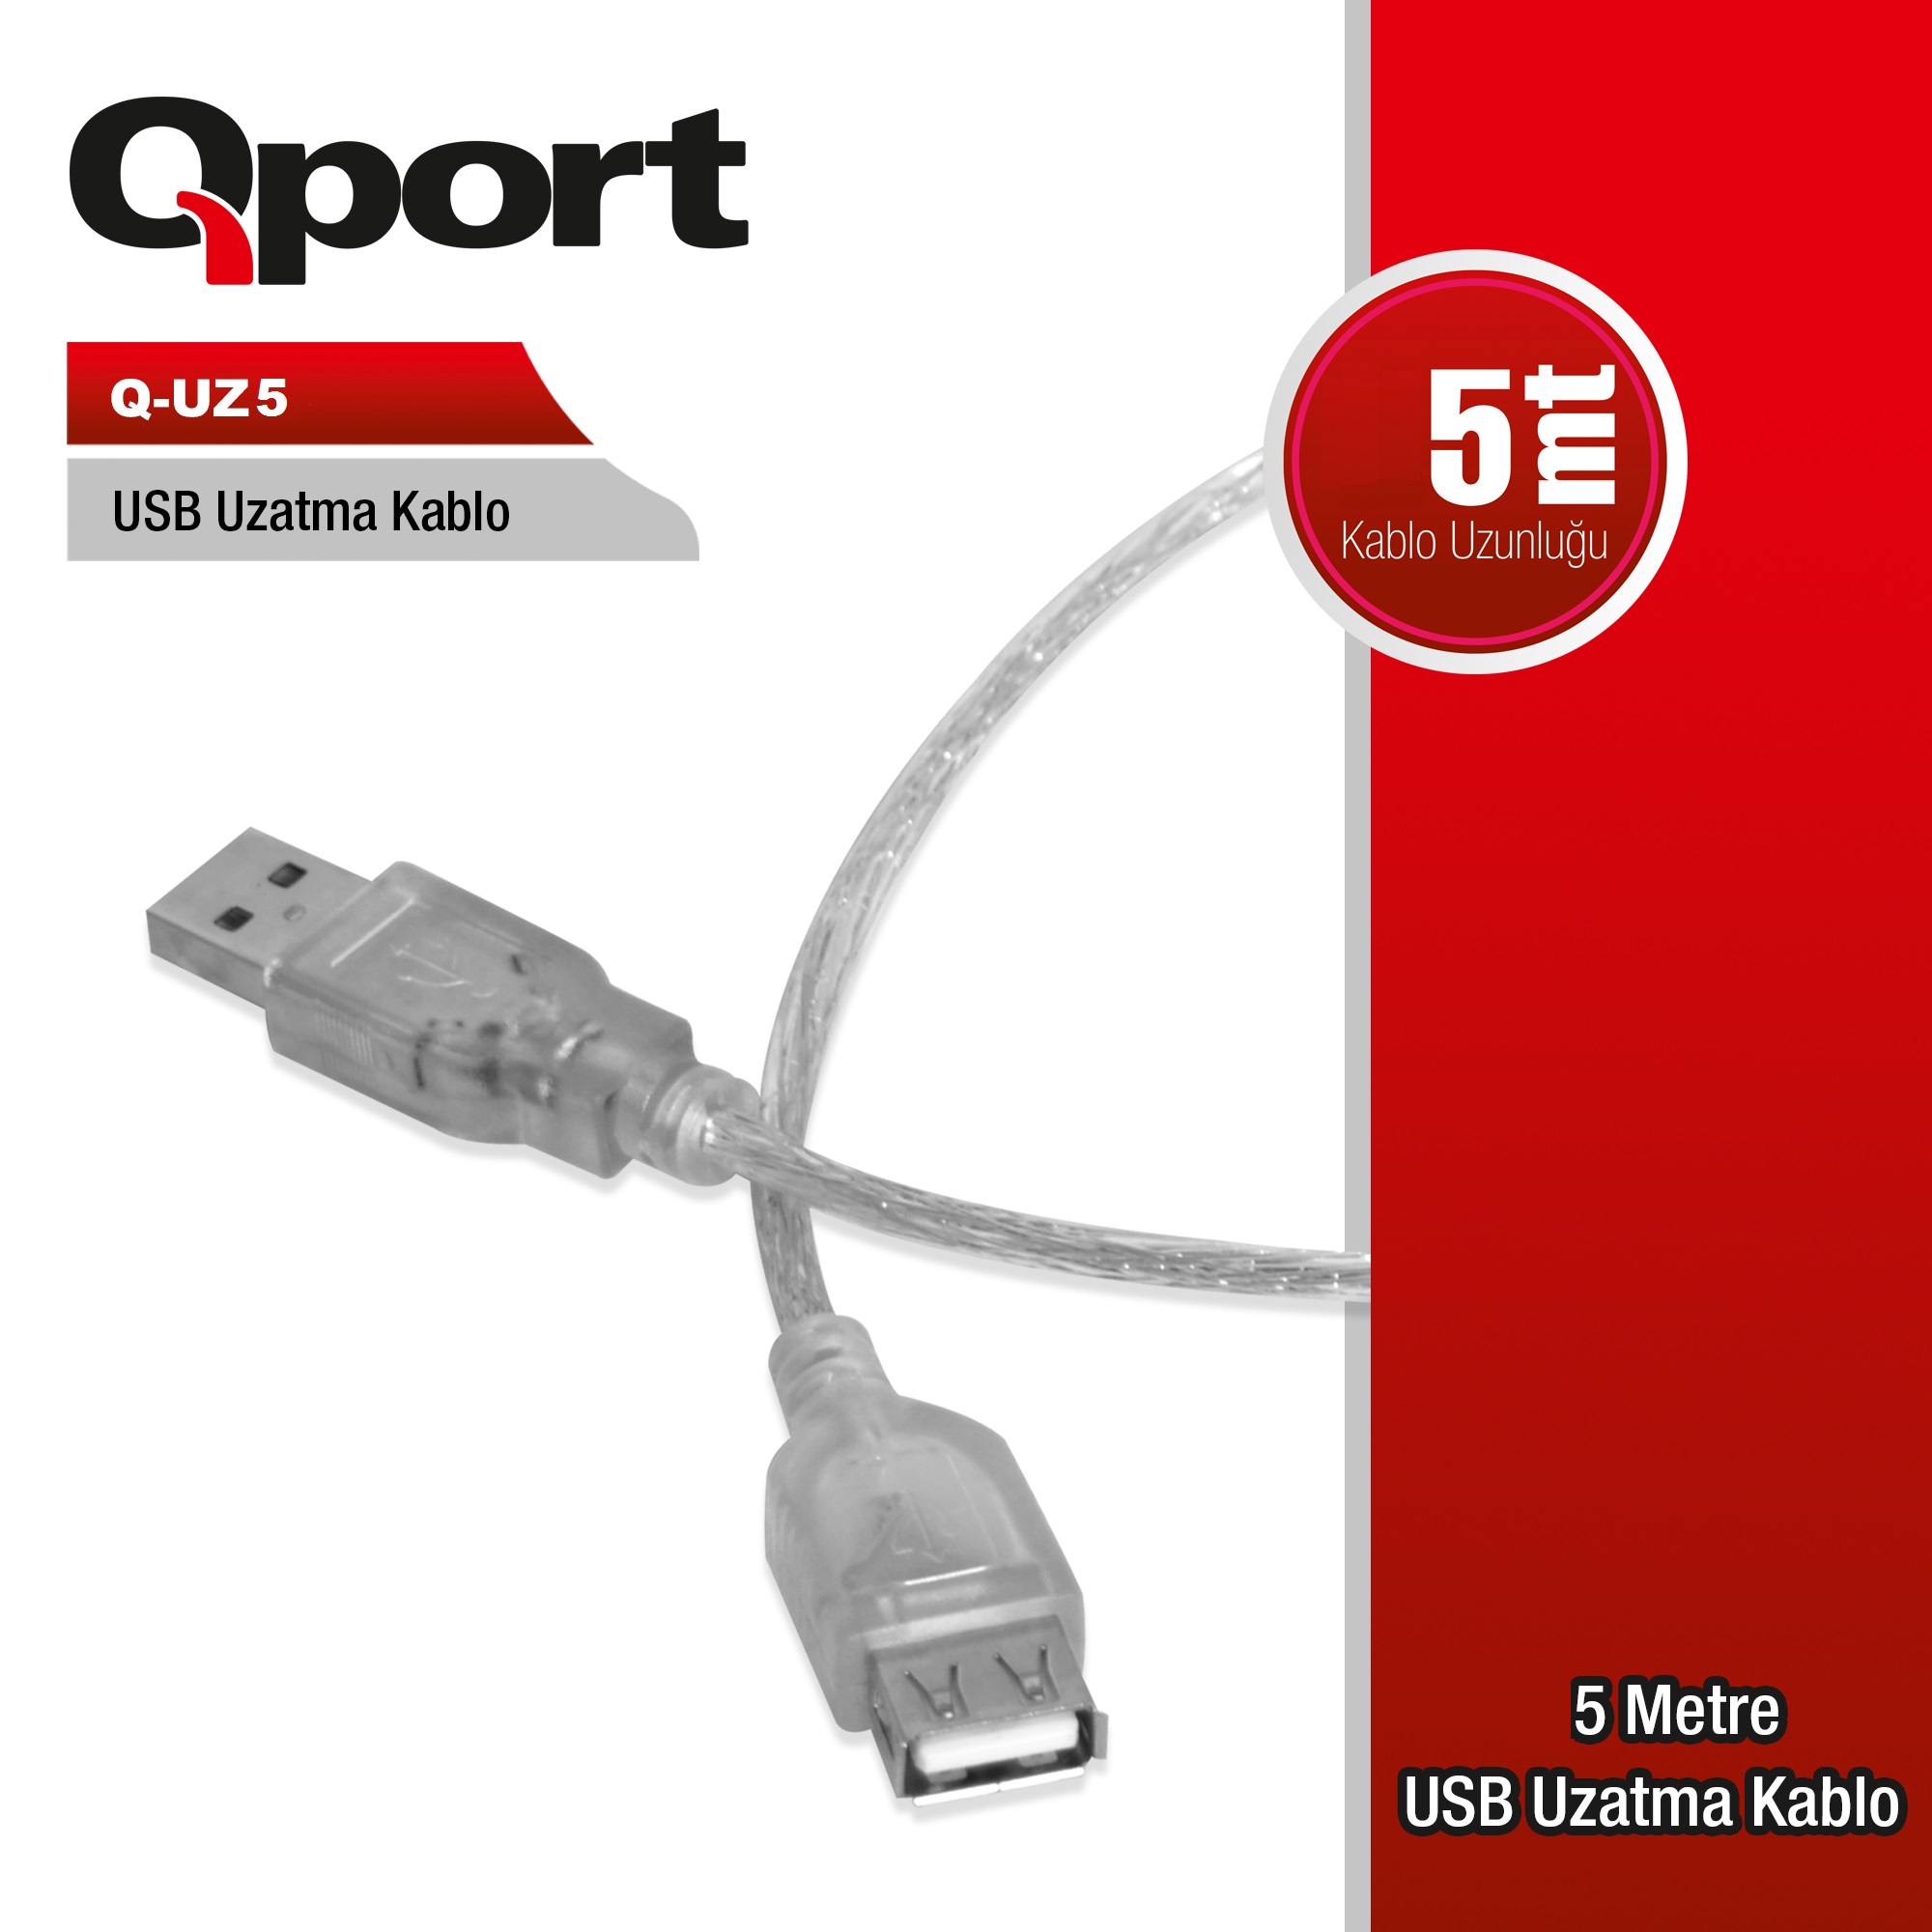 QPORT 5MT USB UZATMA KABLOSU (Q-UZ5)